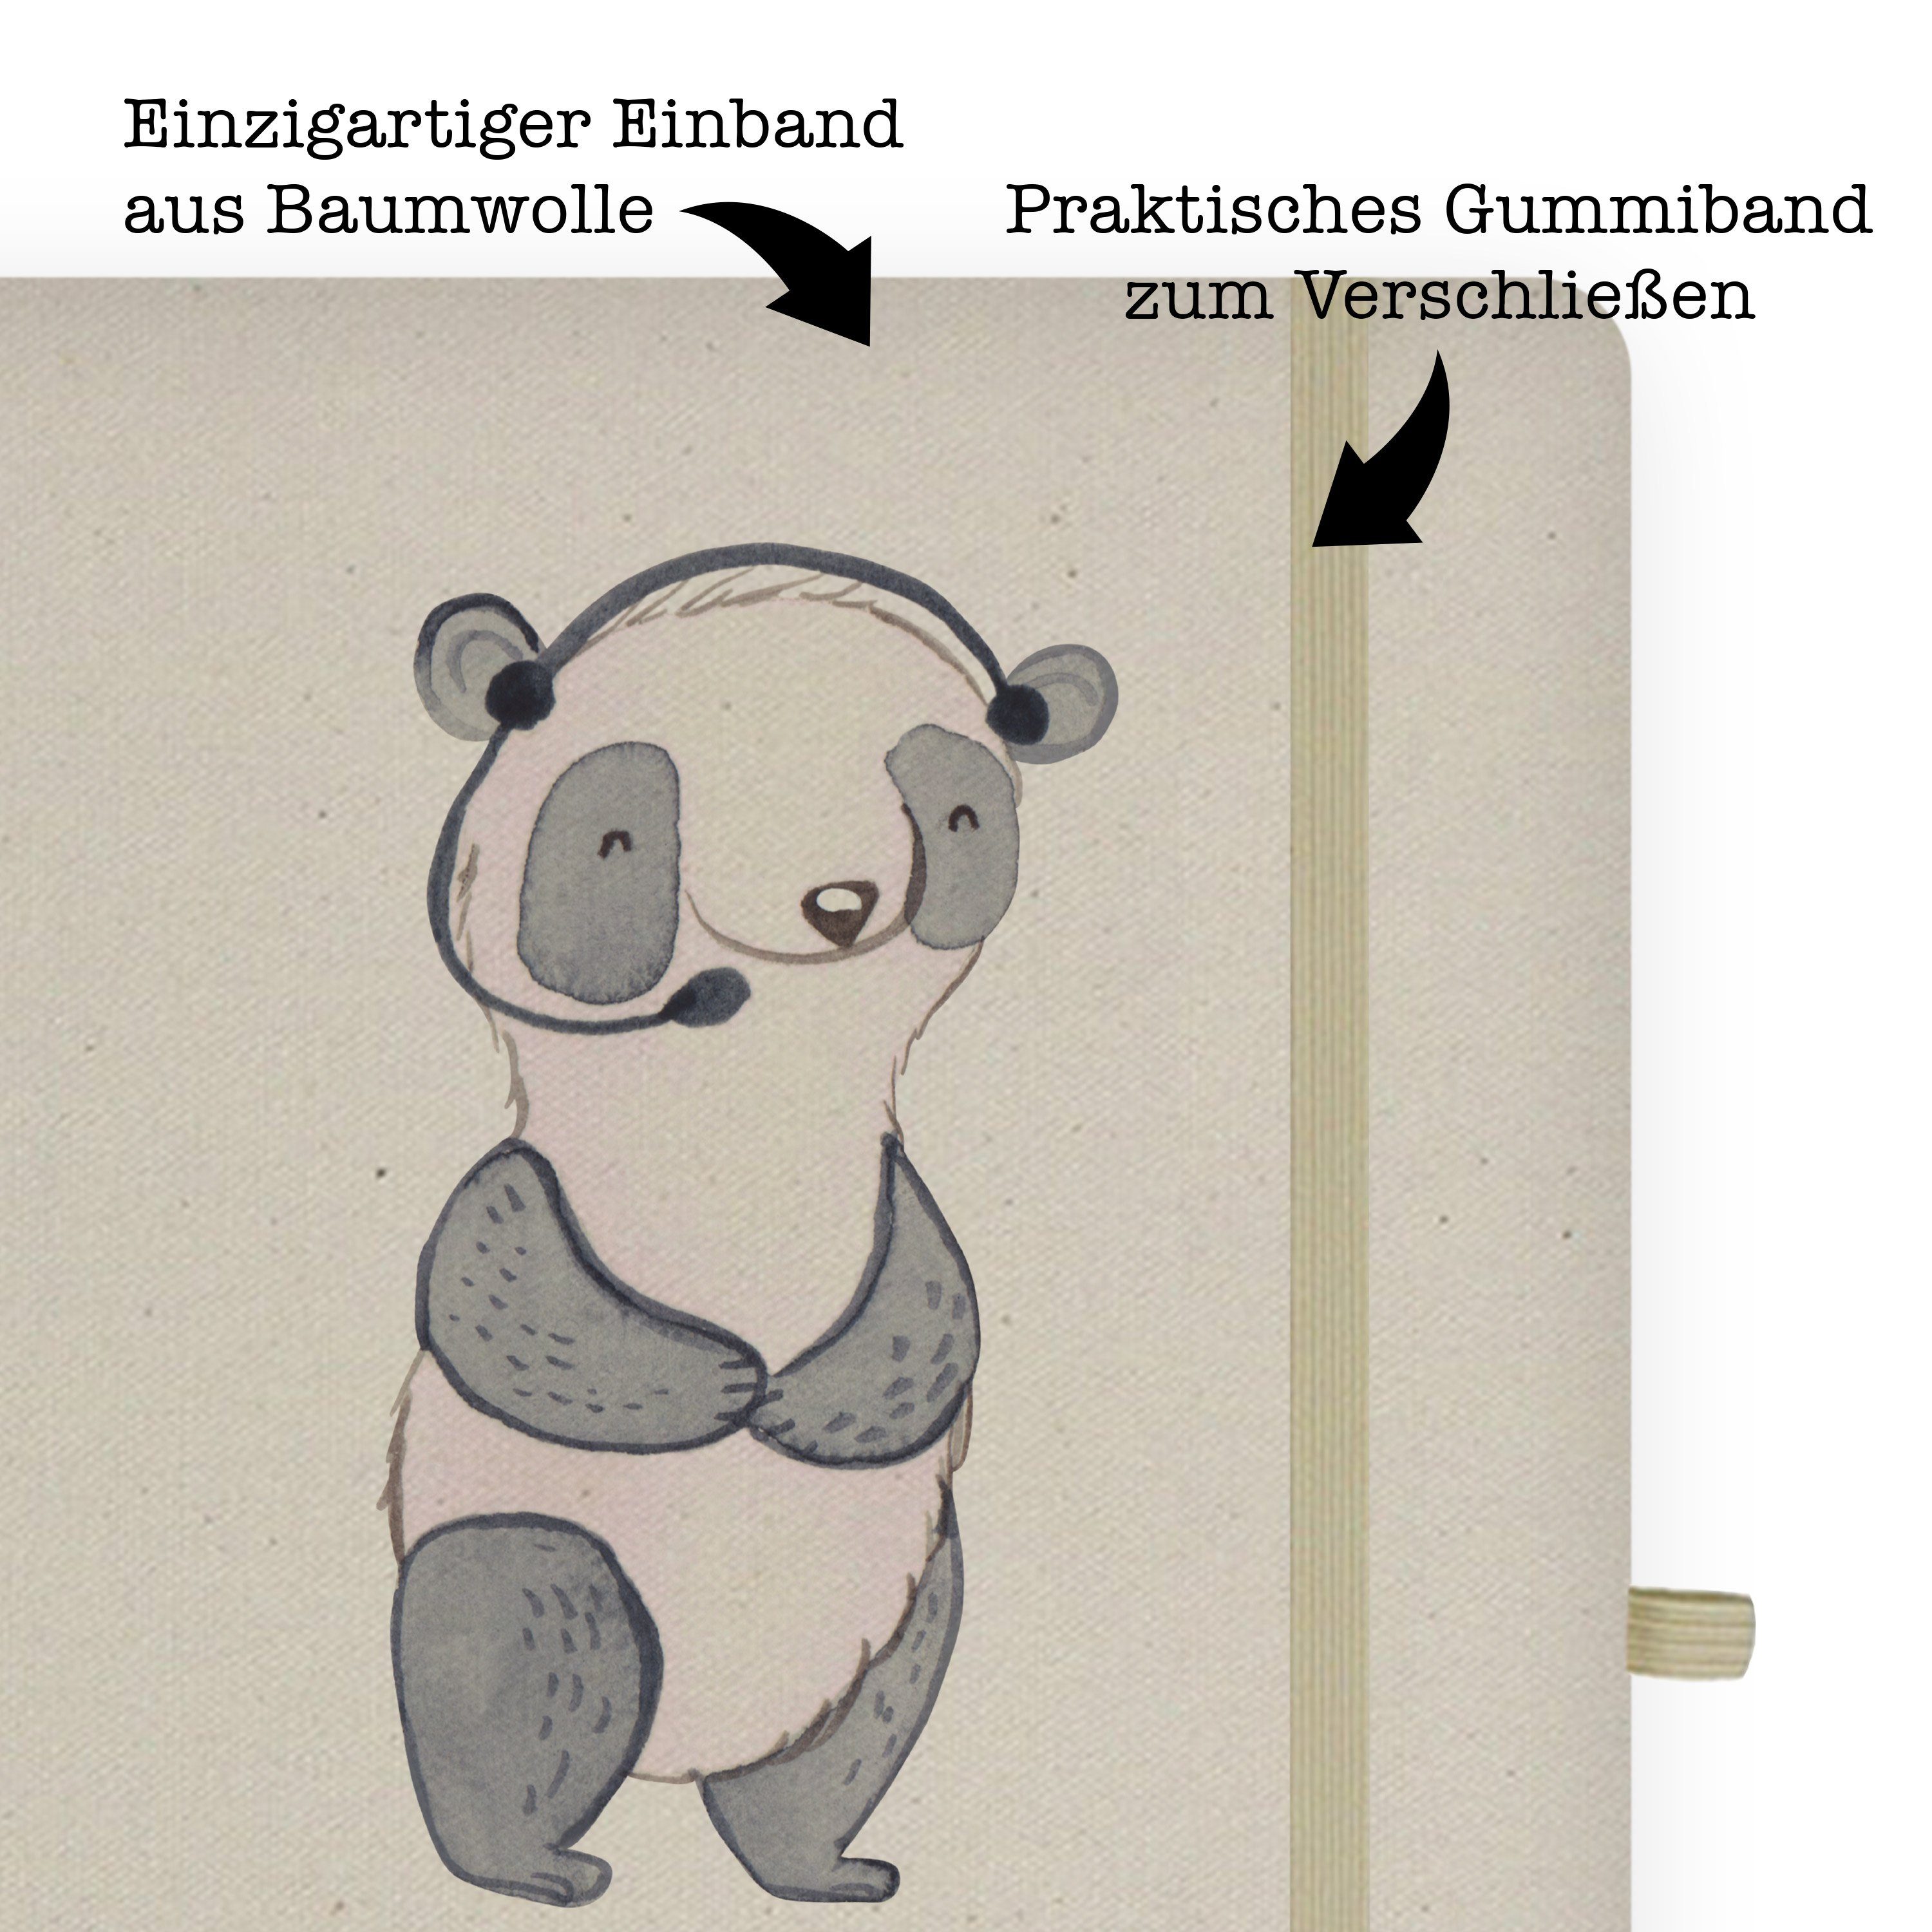 Mr. & Geschenk, Notizbuch & Mrs. Herz Panda Mr. Transparent - Mrs. mit - Journal, Panda Meteorologin Schreibbuch